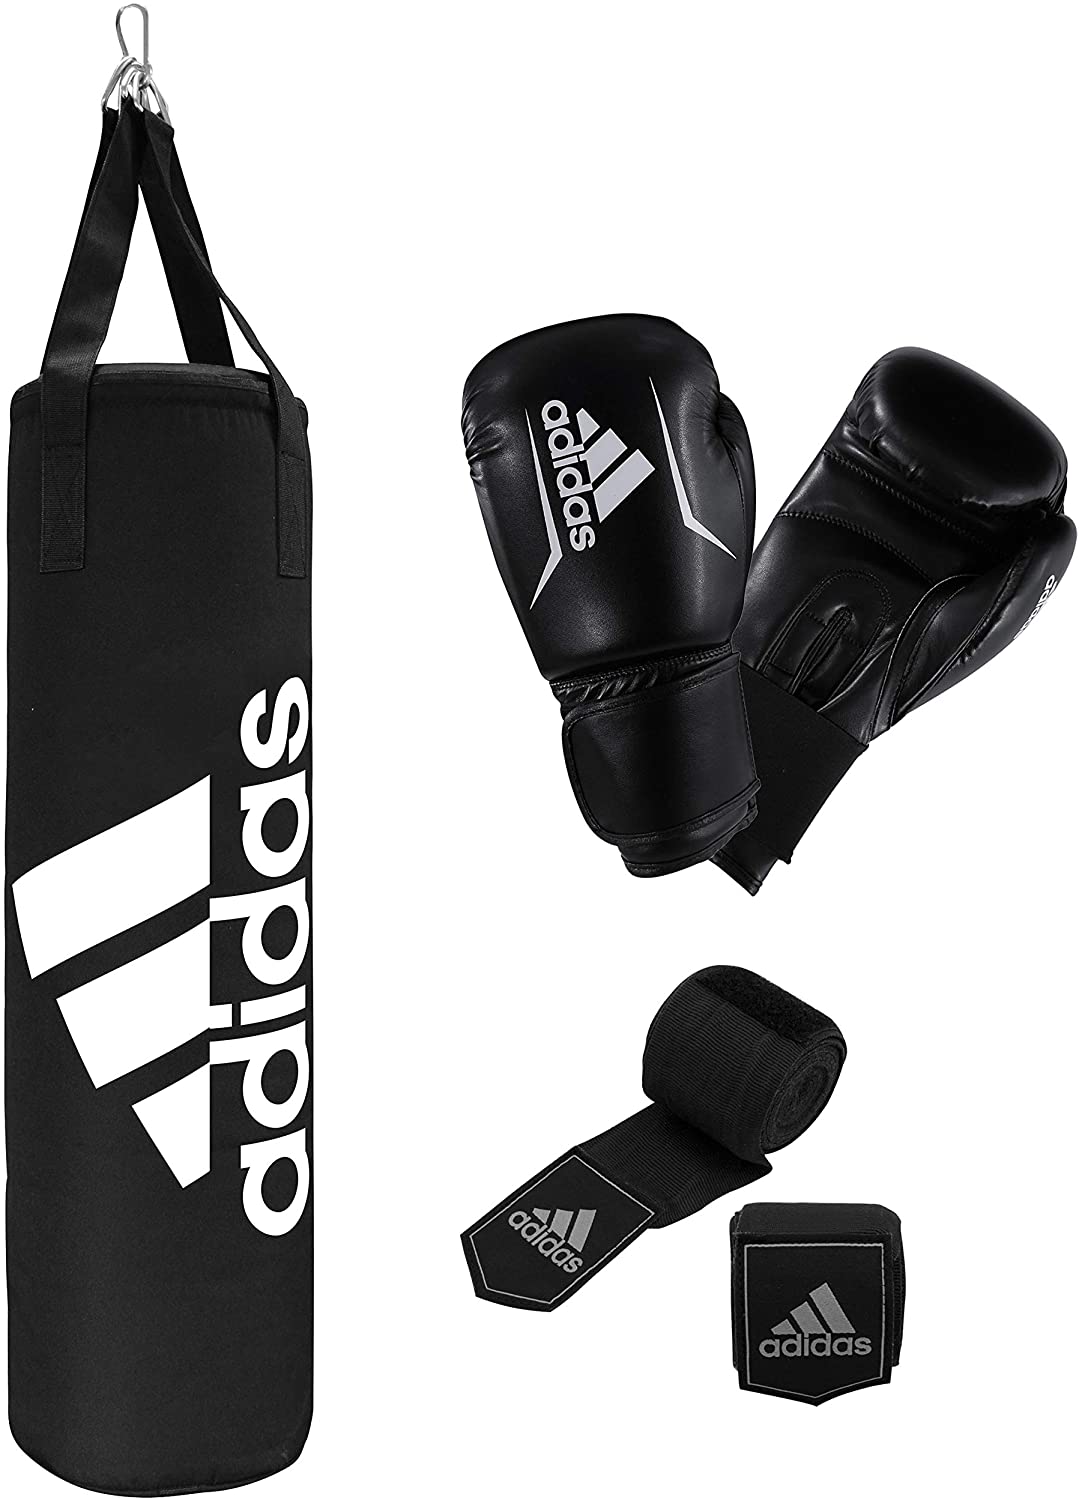 adidas boxing set ADIBPKIT03